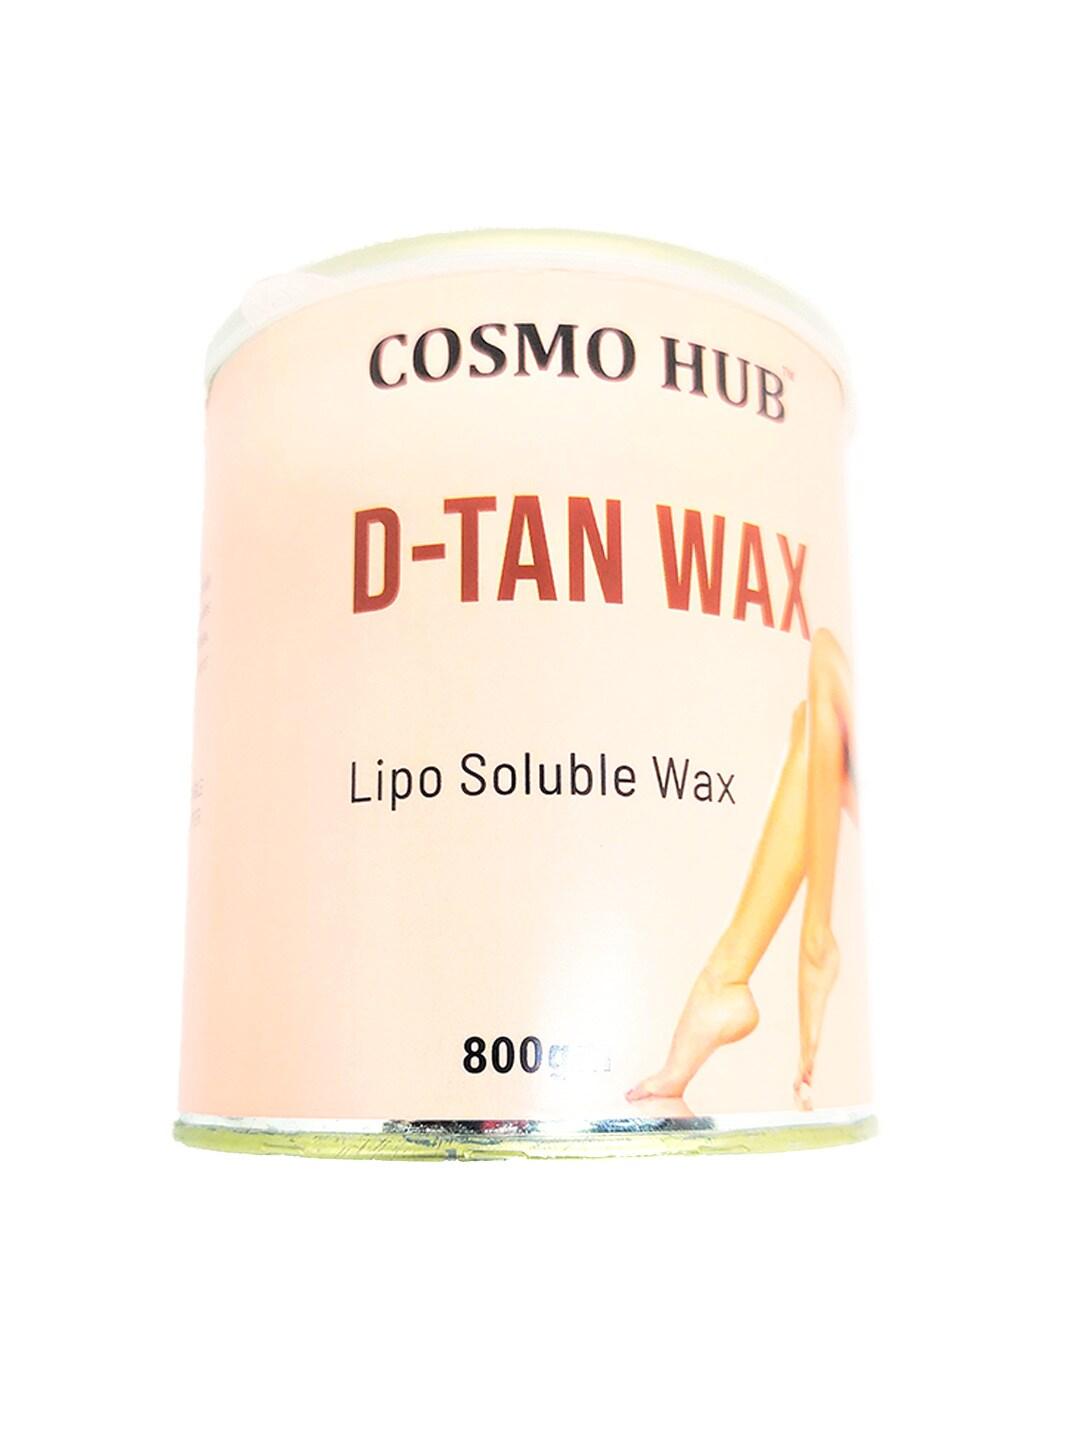 COSMO HUB Professional Lipo Soluble Detan Wax - 800 g